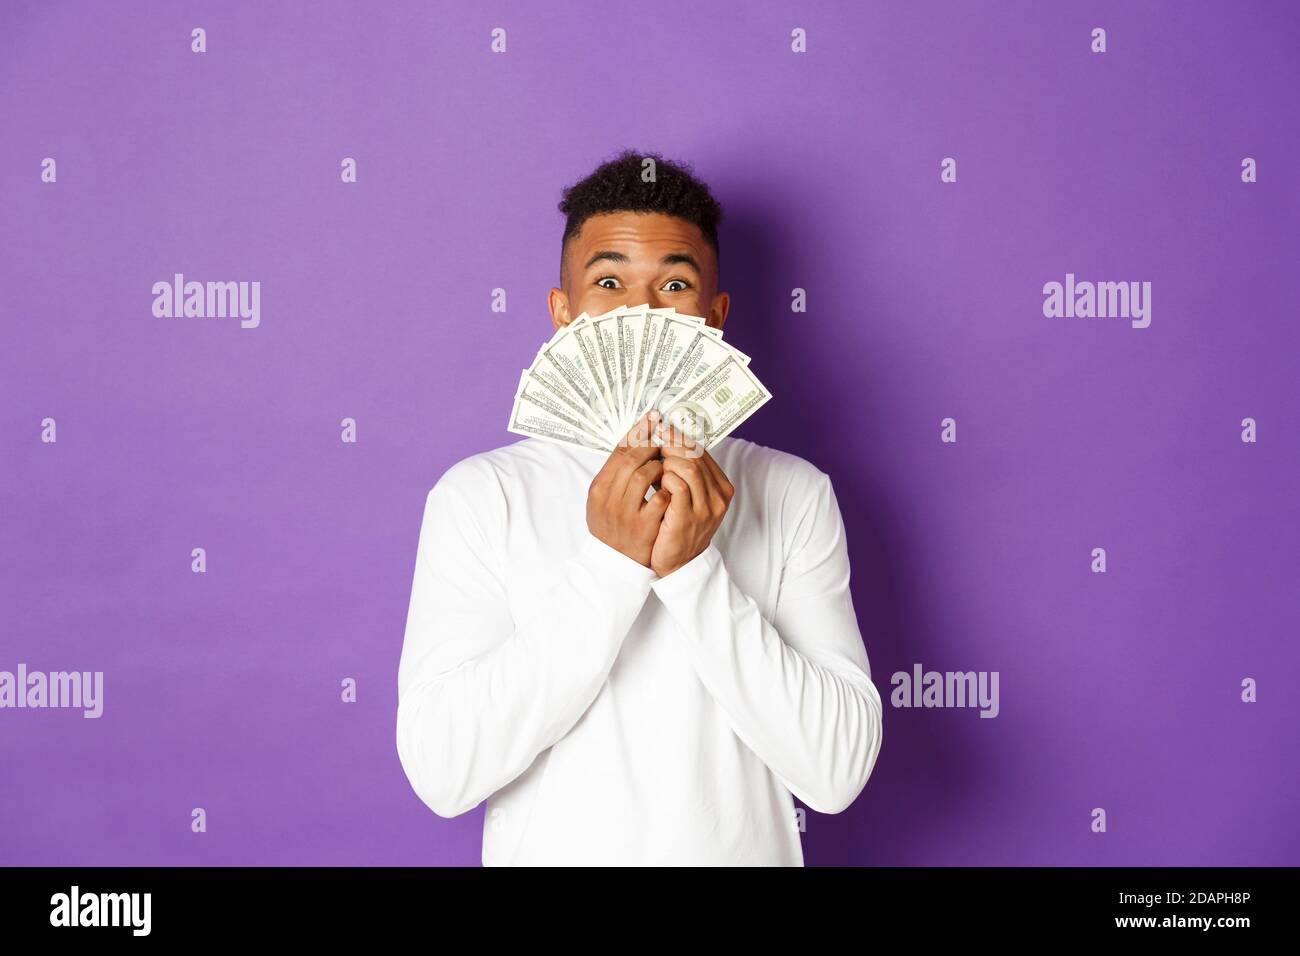 Image d'un homme afro-américain heureux et excité, montrant une grande somme d'argent et se réjouissant, gagnant loterie, debout sur fond violet Banque D'Images